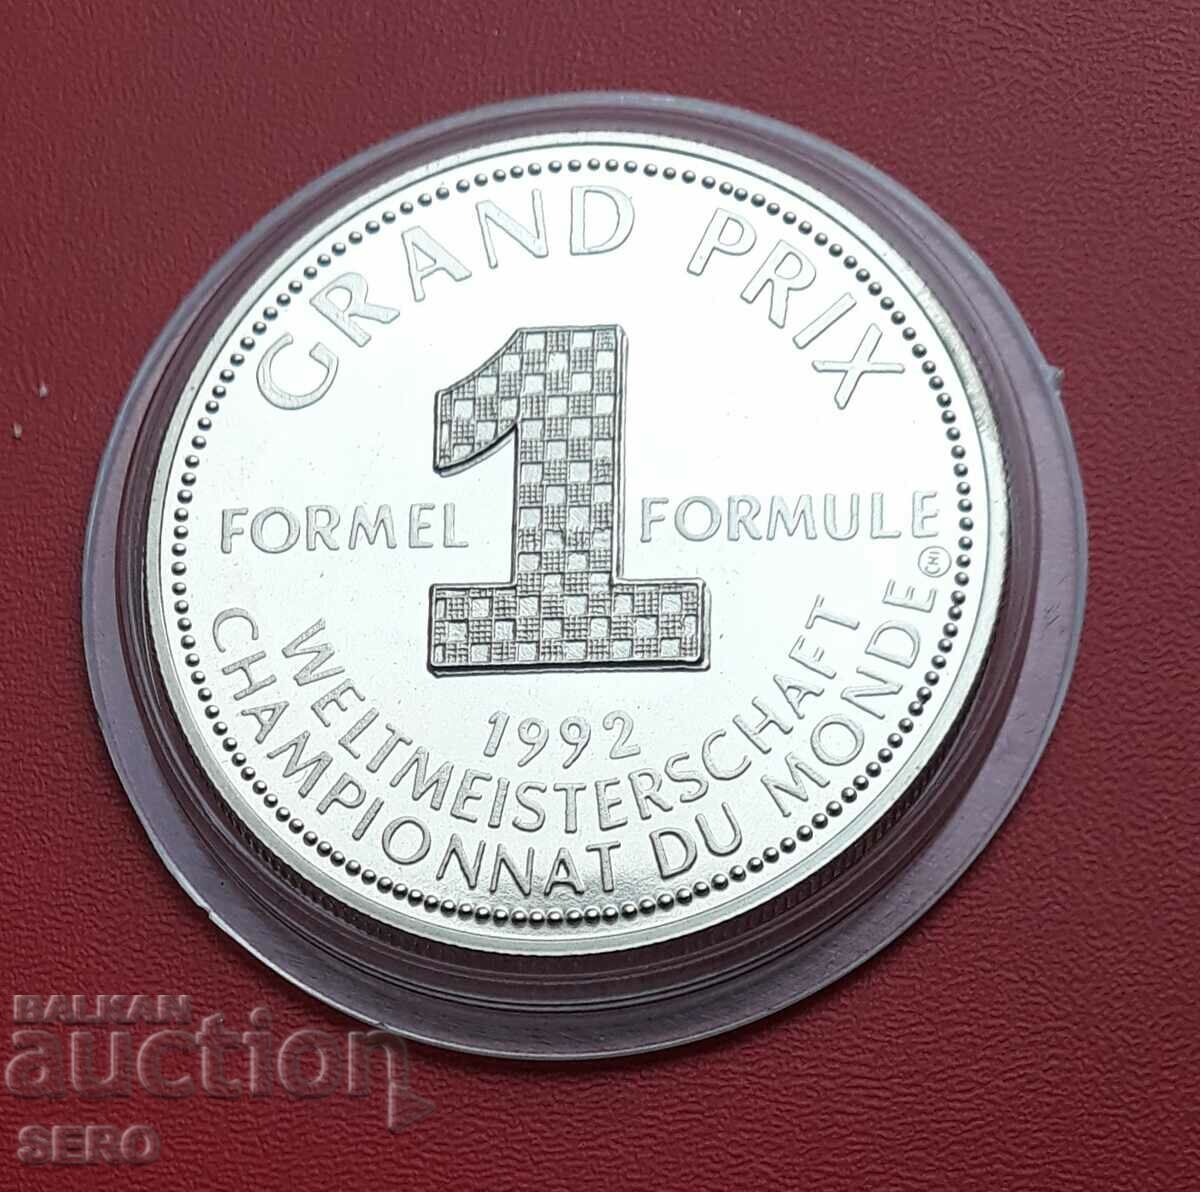 Γερμανία-μετάλλιο-φόρμουλα 1 για το γκραν πρι το 1992